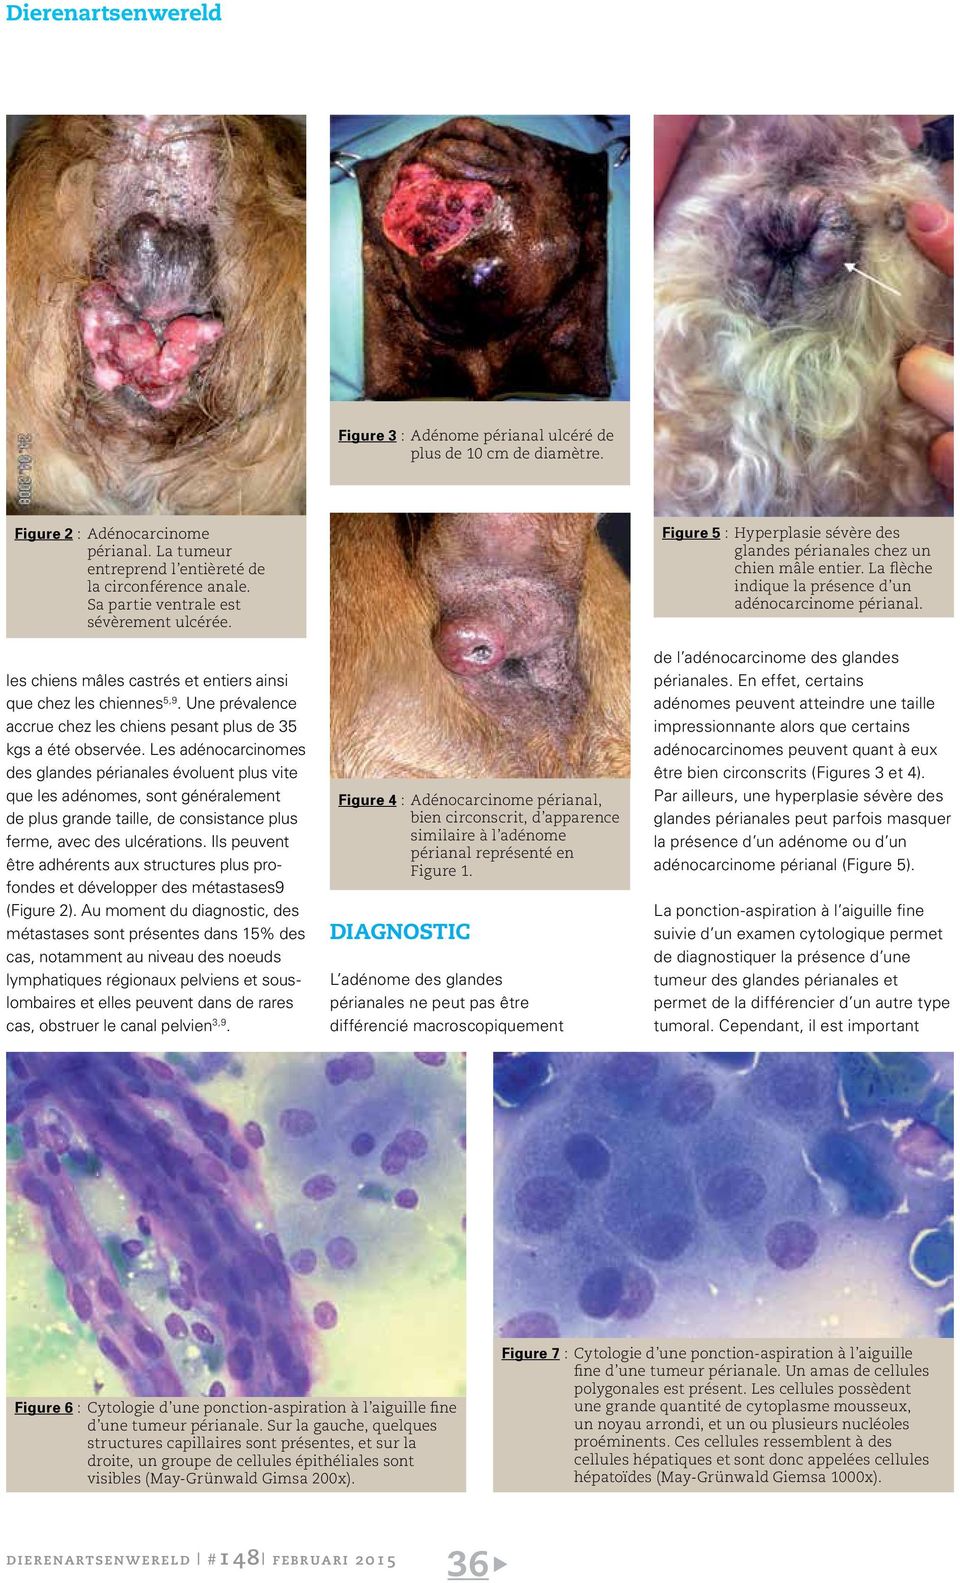 Les tumeurs périanales chez le chien - PDF Free Download